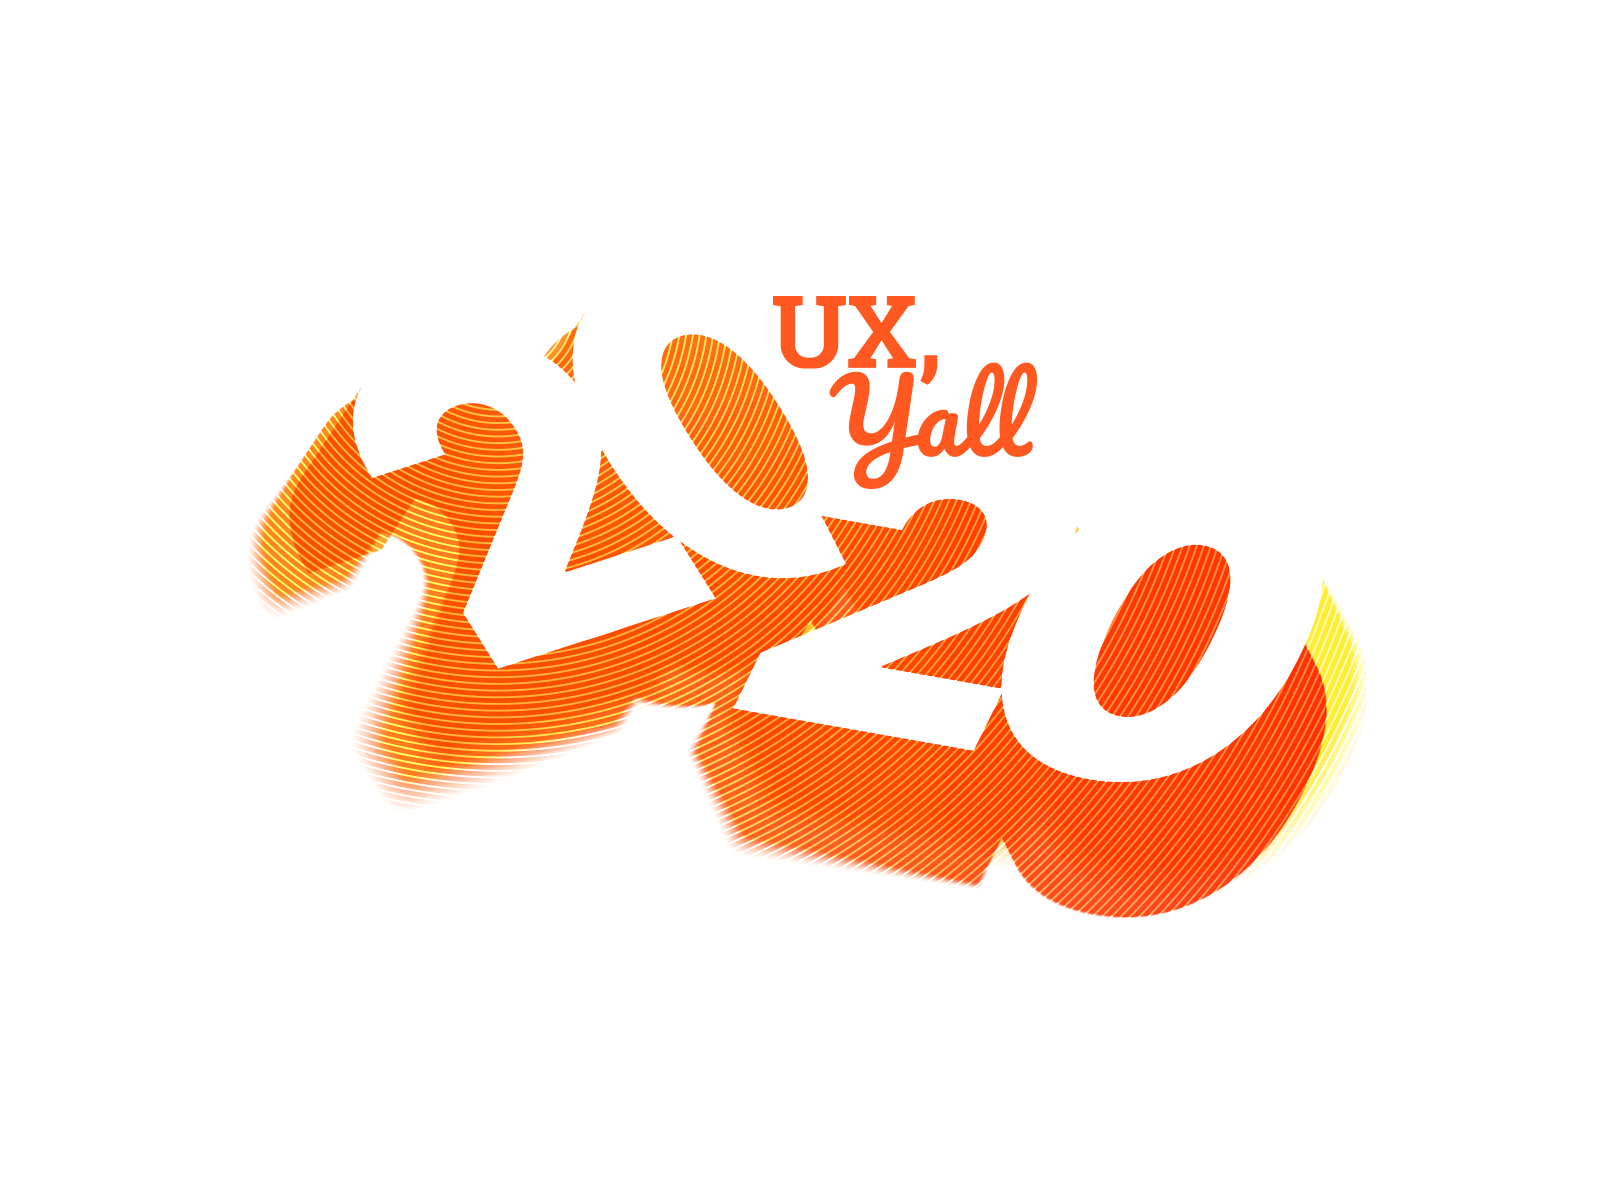 UX Y'all 2020